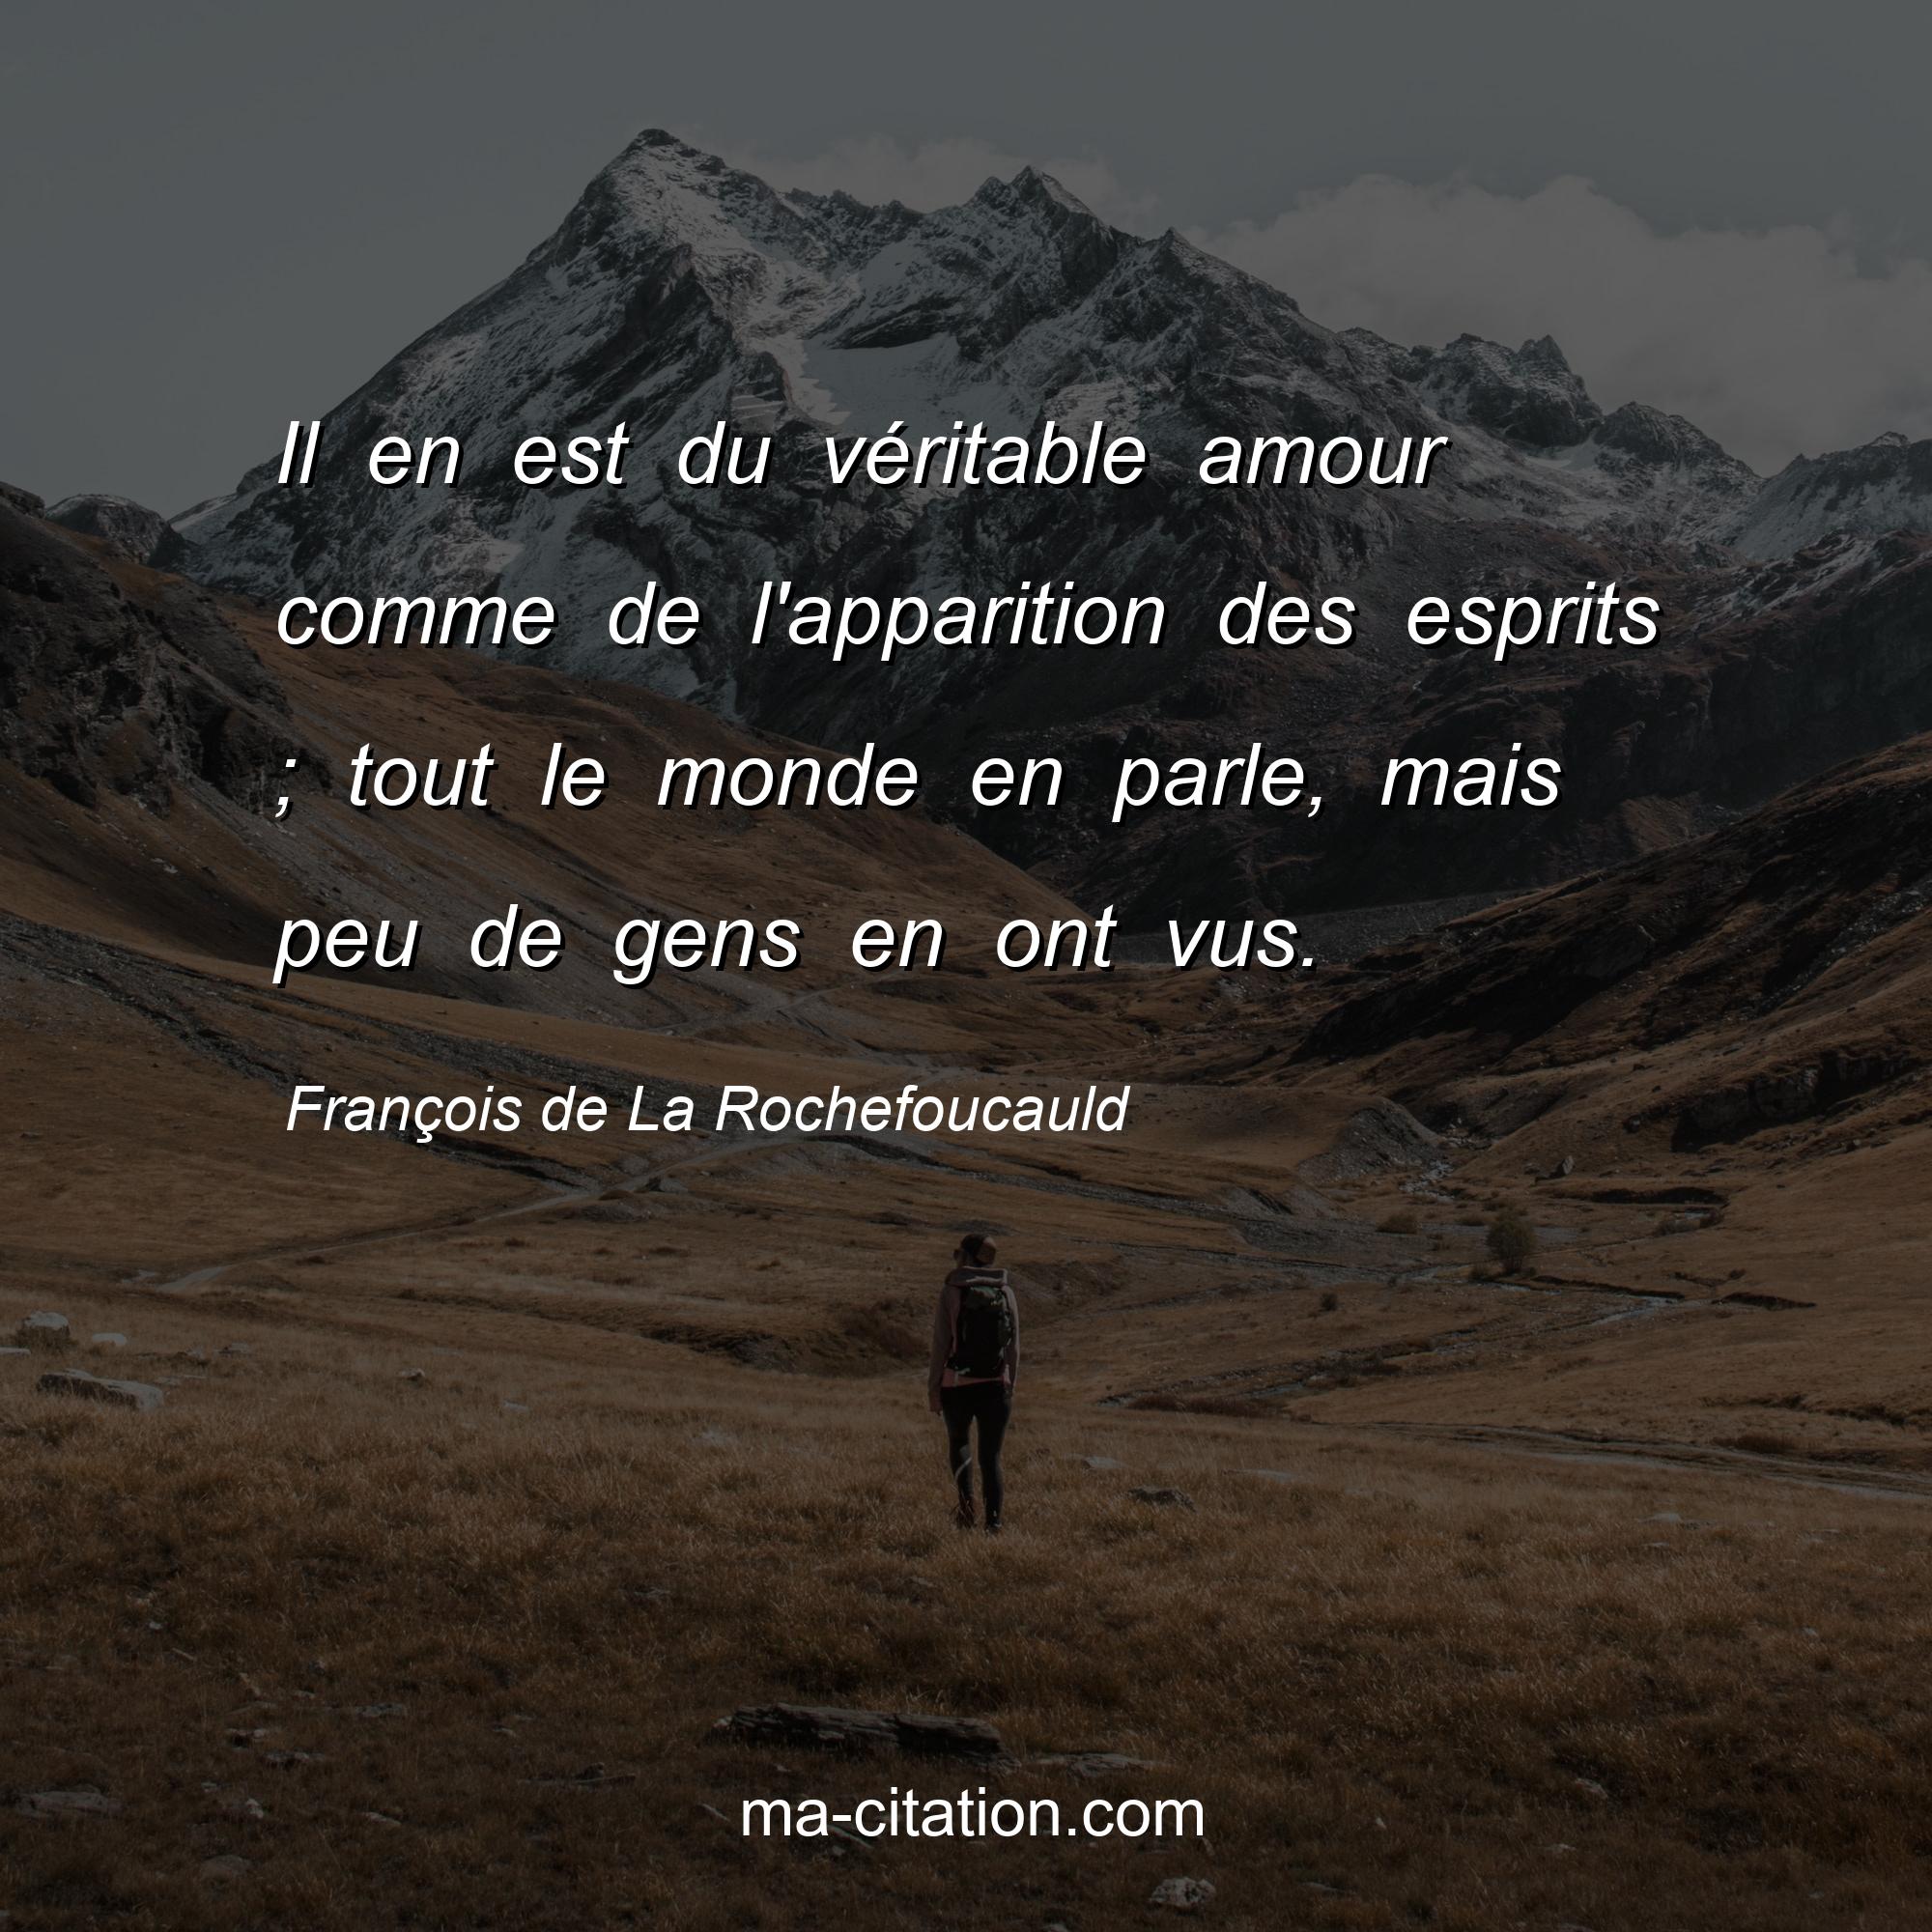 François de La Rochefoucauld : Il en est du véritable amour comme de l'apparition des esprits ; tout le monde en parle, mais peu de gens en ont vus.